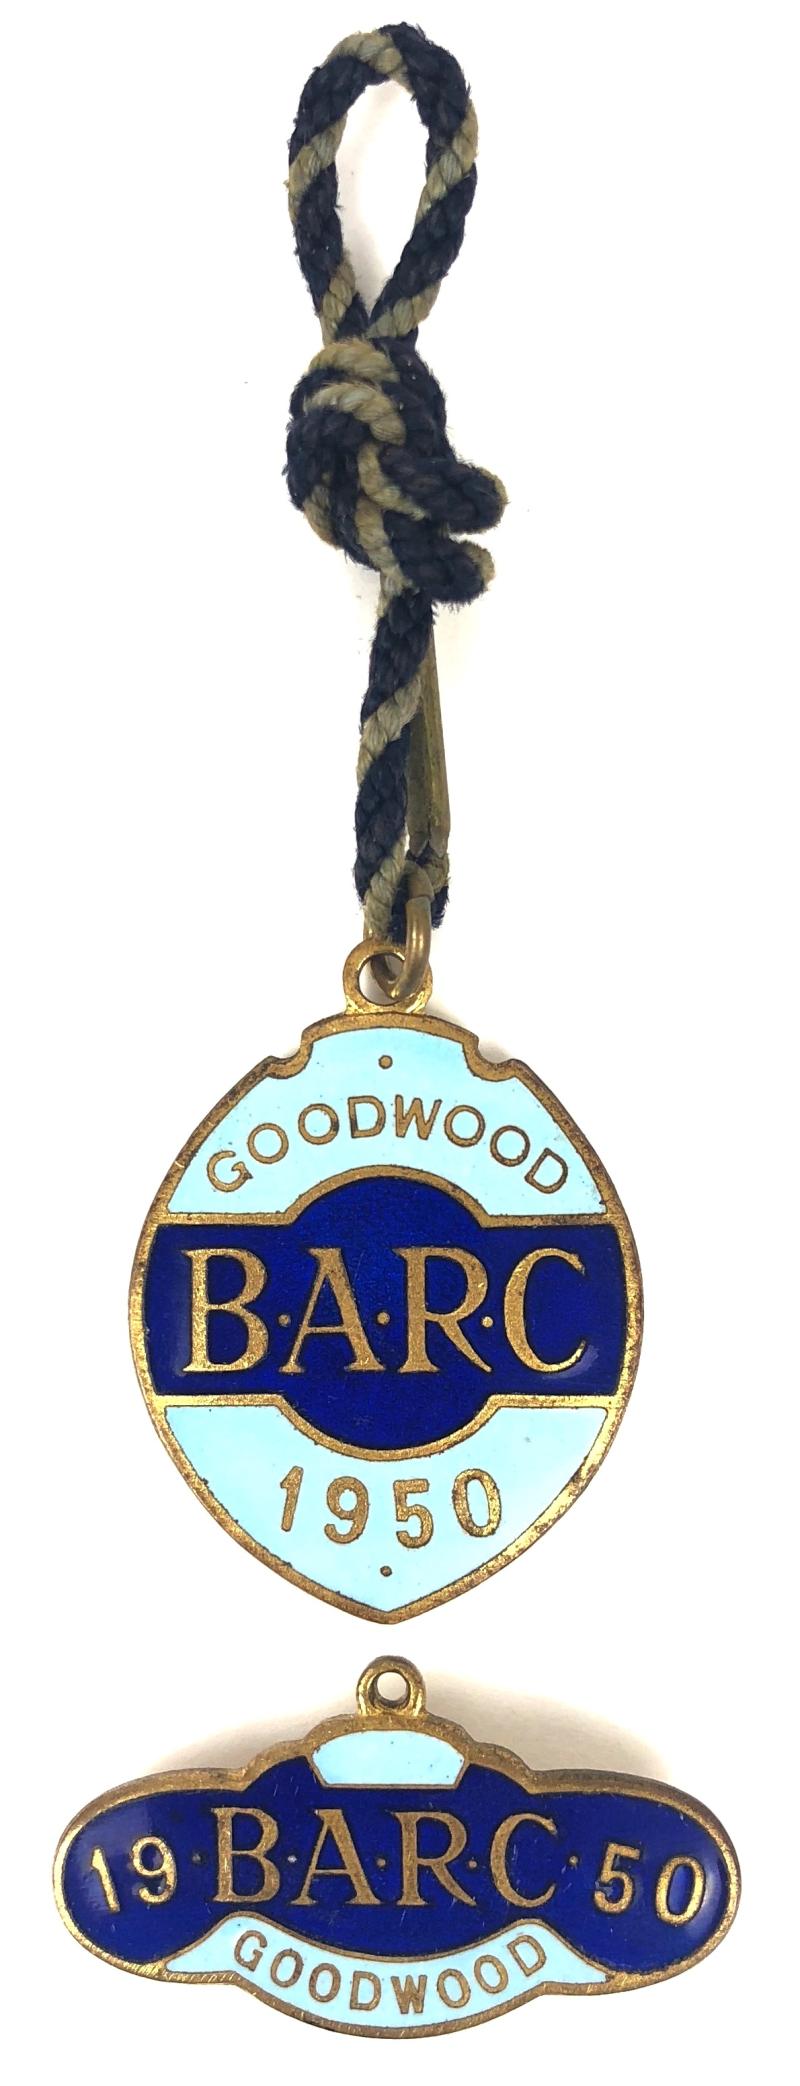 1950 Goodwood BARC membership badge & guest